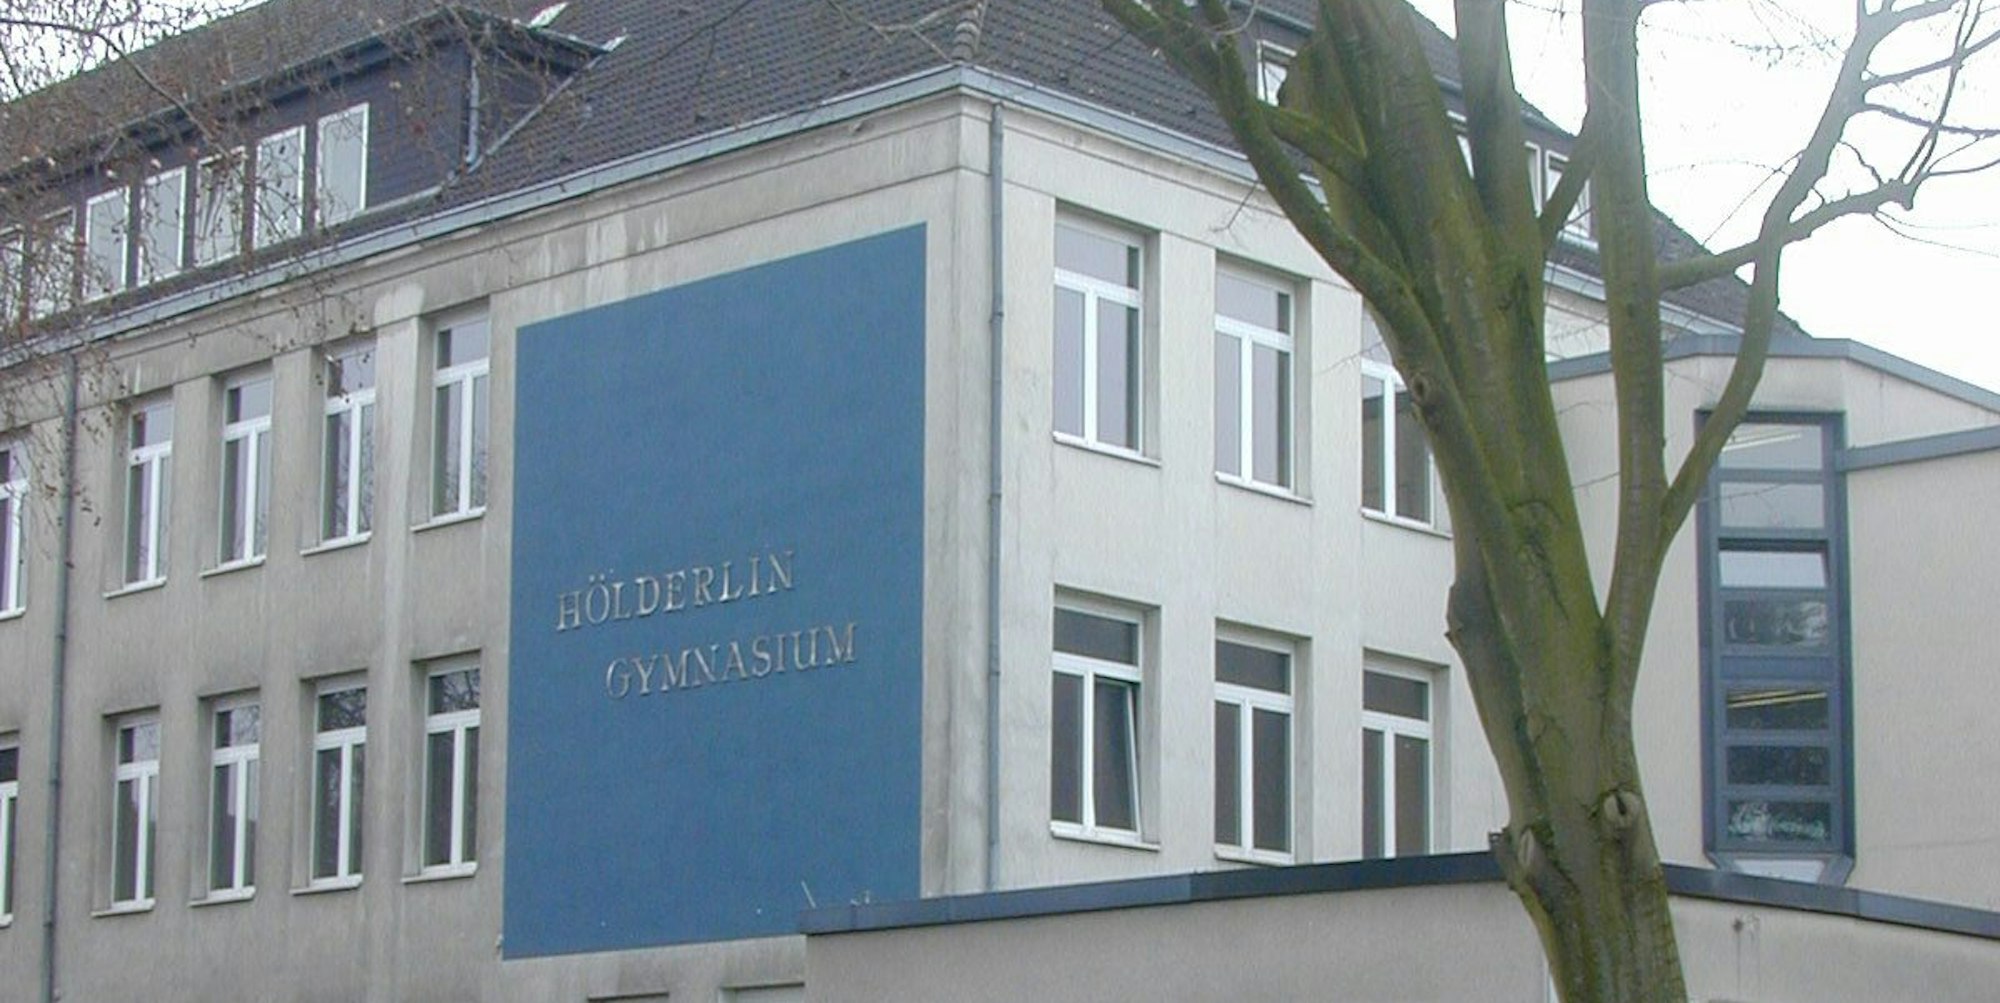 Hölderlin-Gymnasium